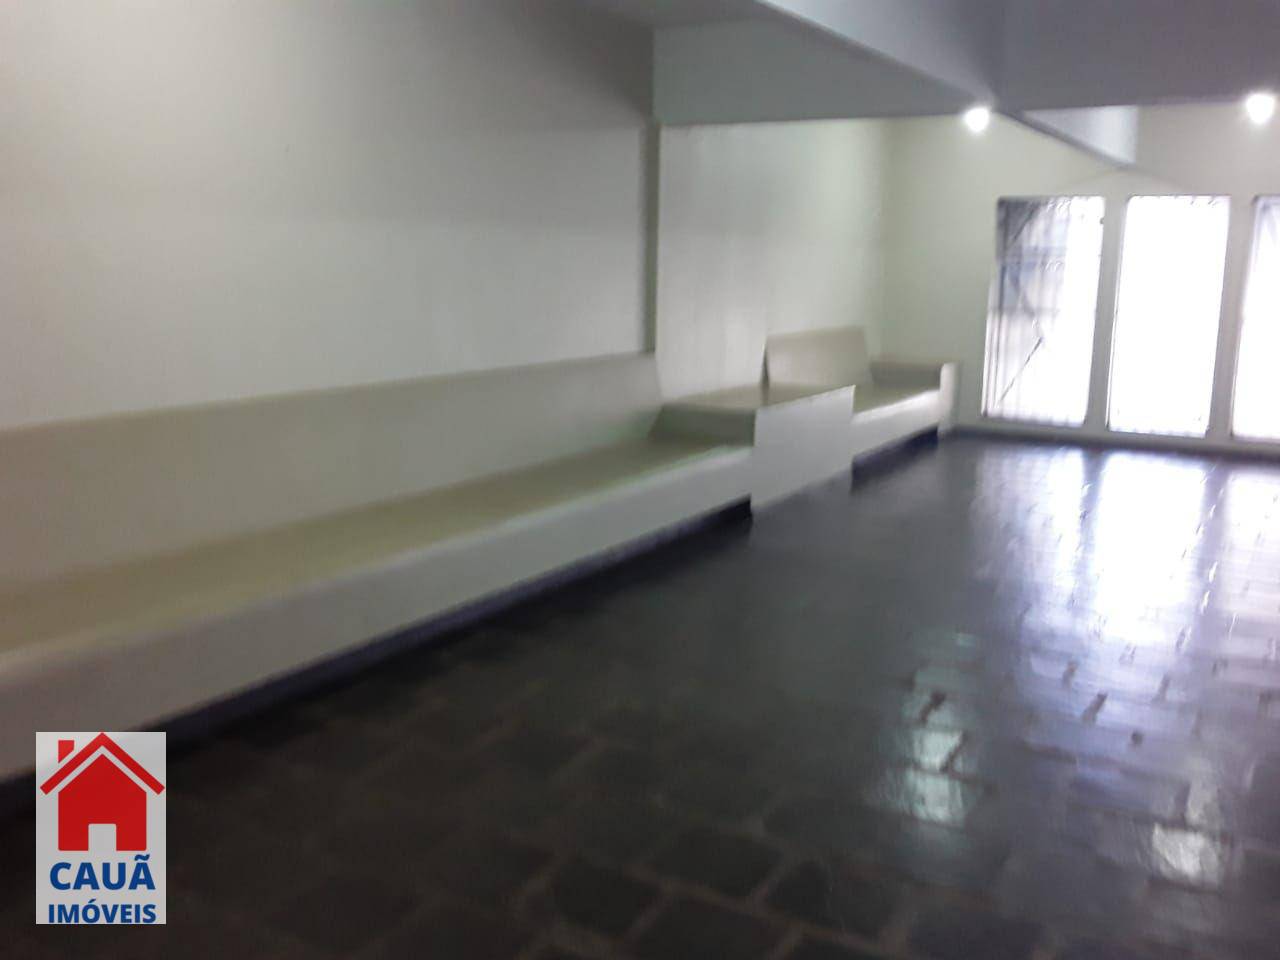 Apartamento, 3 quartos, 160 m² - Foto 2